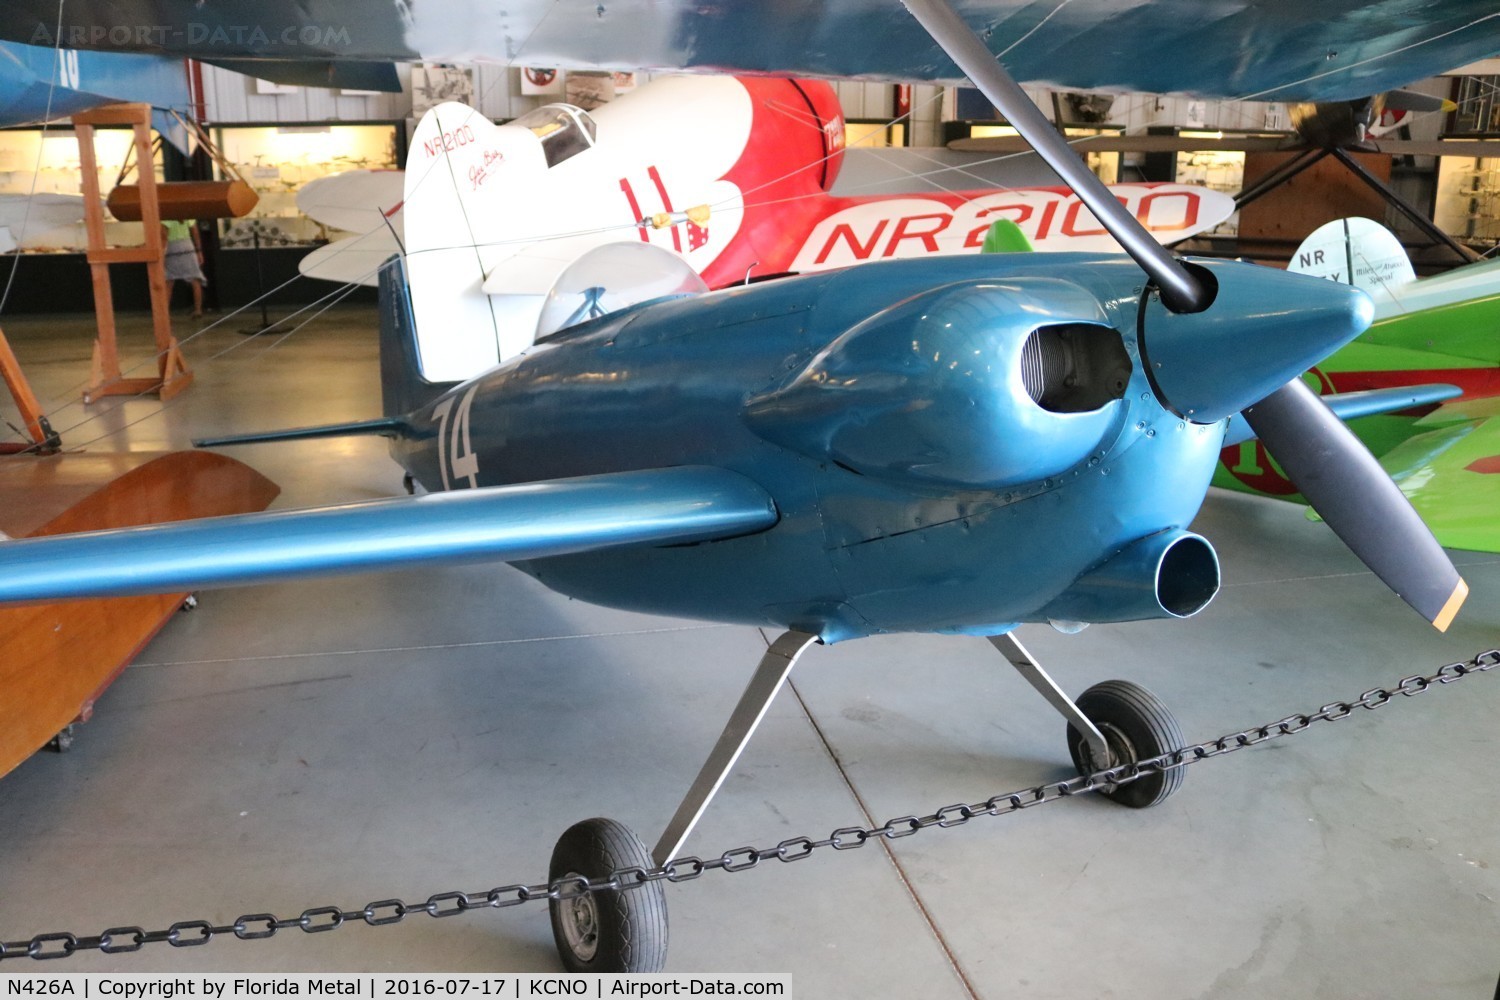 N426A, 1950 Orlowski Henri H O 1 C/N 1, Planes of Fame